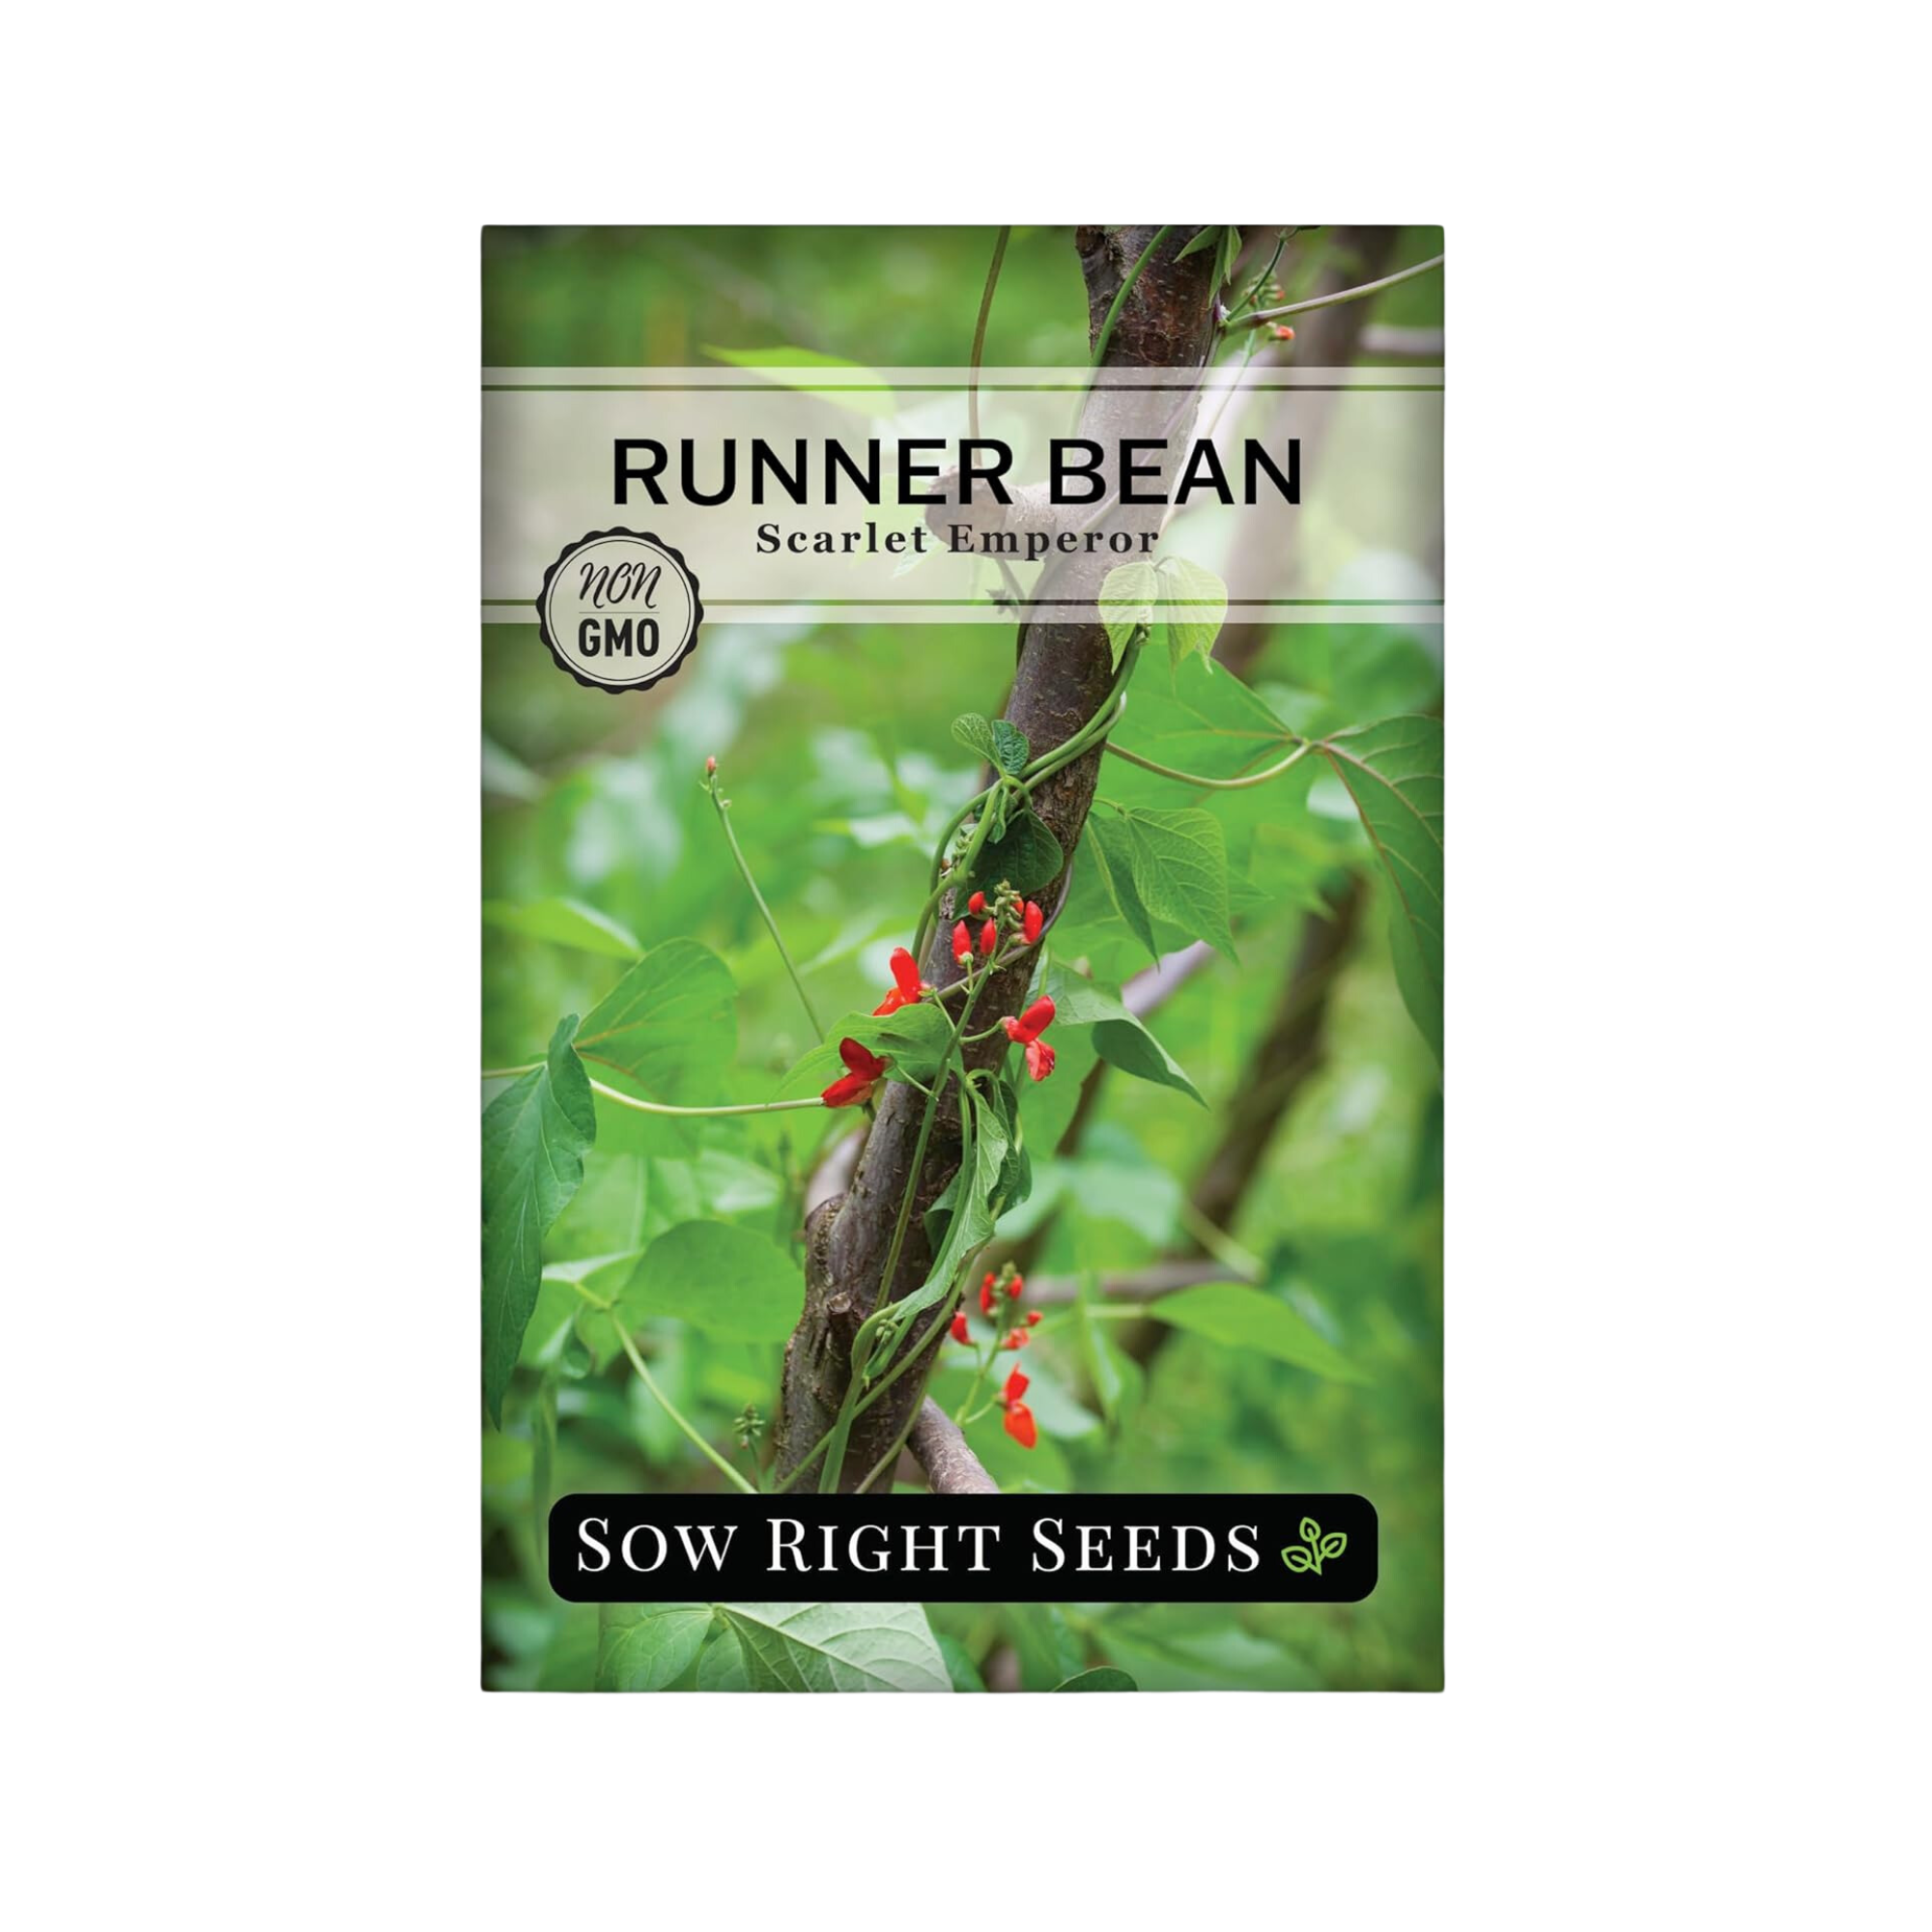 A packet of runner bean seeds